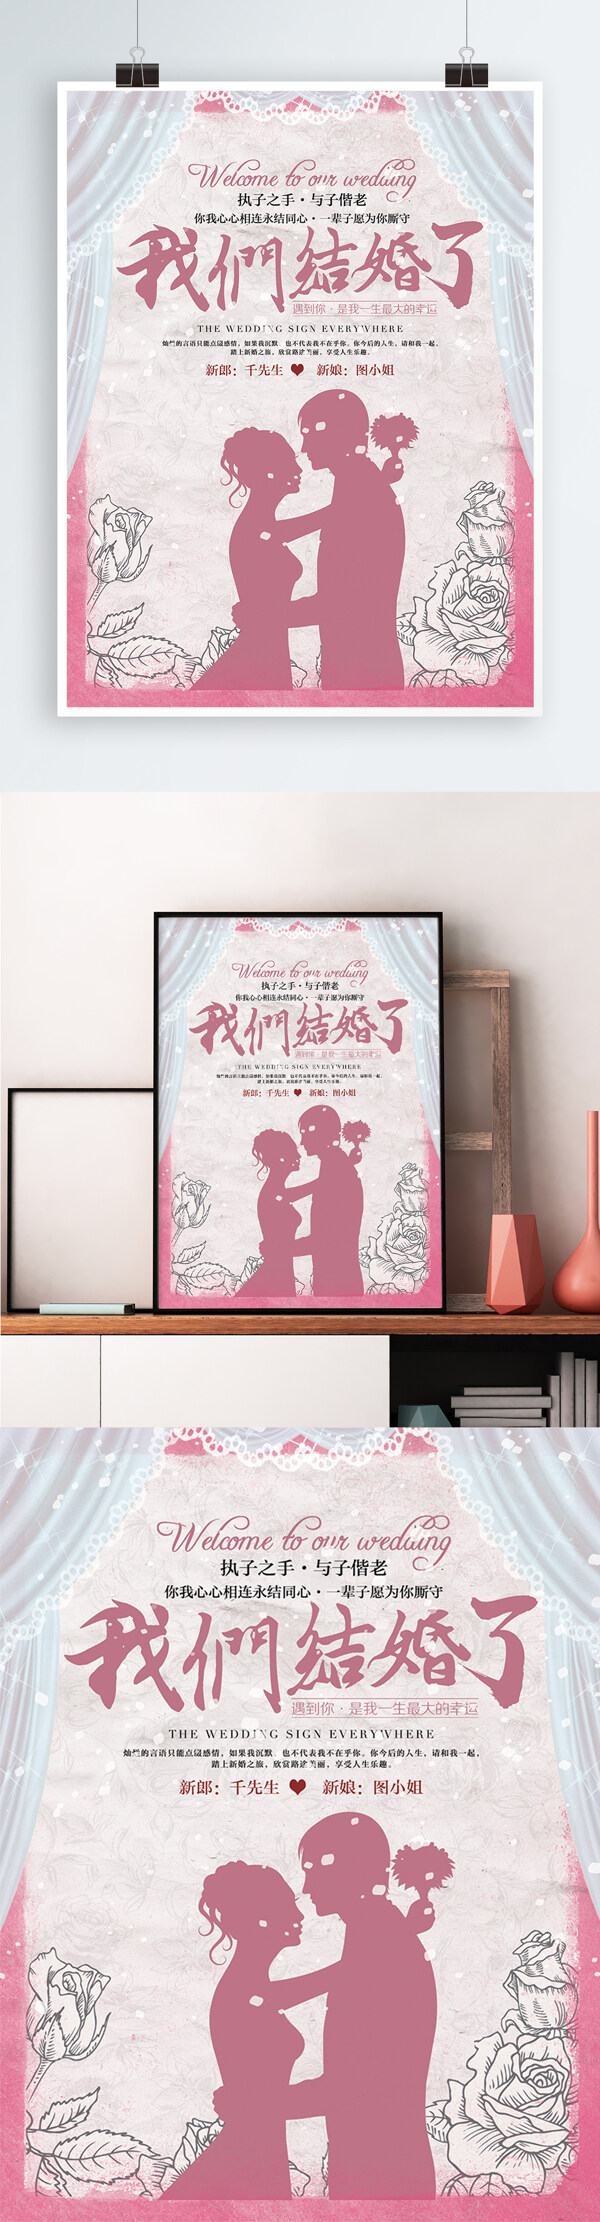 浪漫剪影风格结婚婚礼宣传海报展板